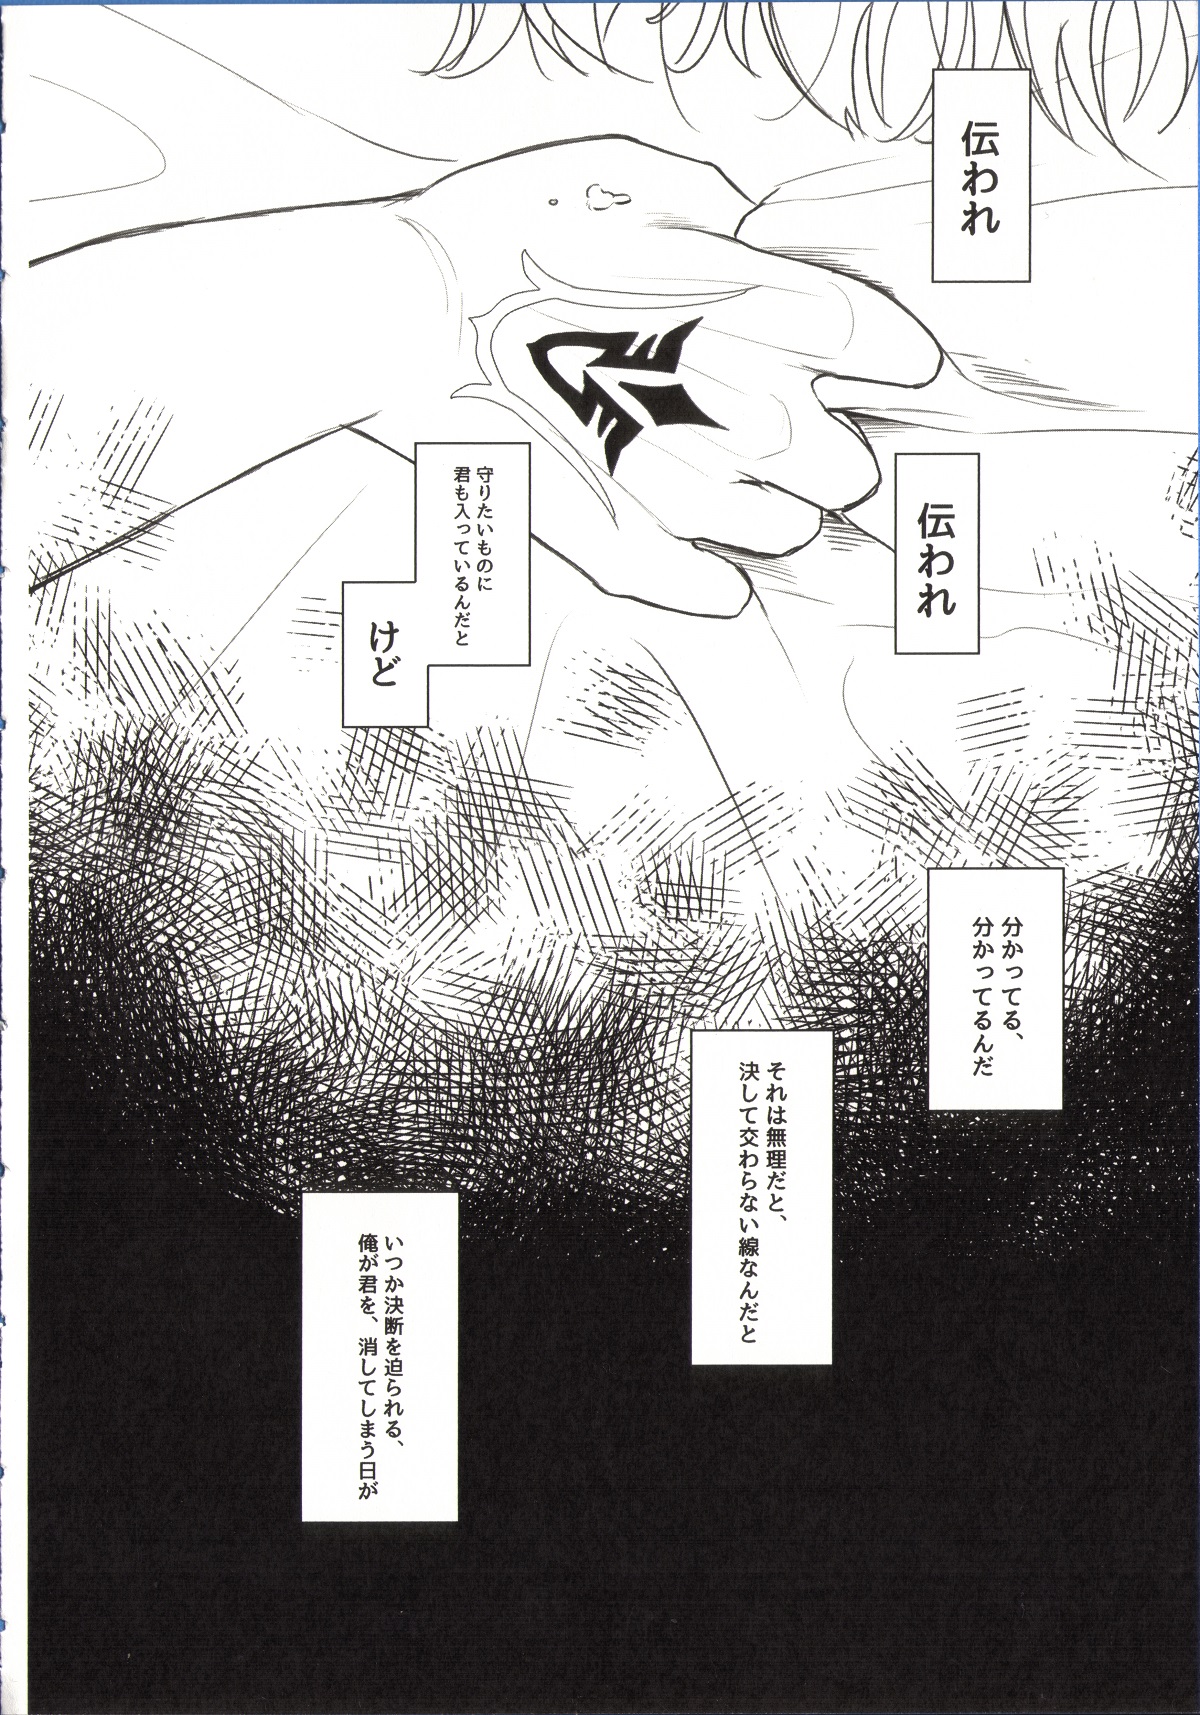 (SUPER25) [8buzaki (Mattya-han)] REASON/ANSWER (Fate/Grand Order) (SUPER25) [八分崎 (抹茶@飯)] REASON/ANSWER (Fate/Grand Order)